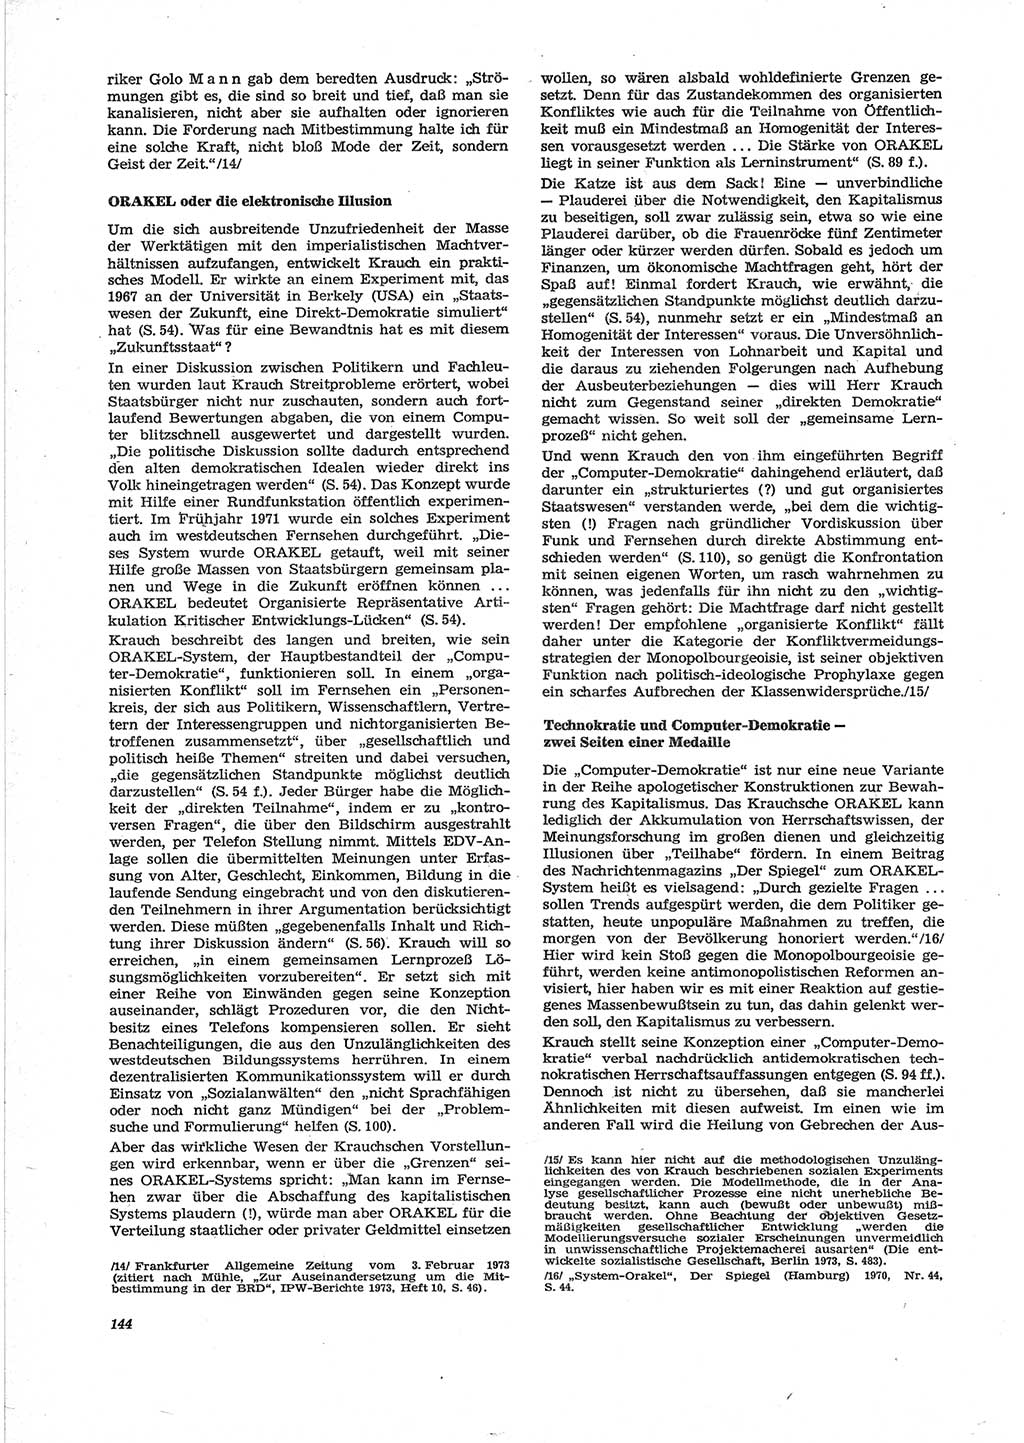 Neue Justiz (NJ), Zeitschrift für Recht und Rechtswissenschaft [Deutsche Demokratische Republik (DDR)], 28. Jahrgang 1974, Seite 144 (NJ DDR 1974, S. 144)